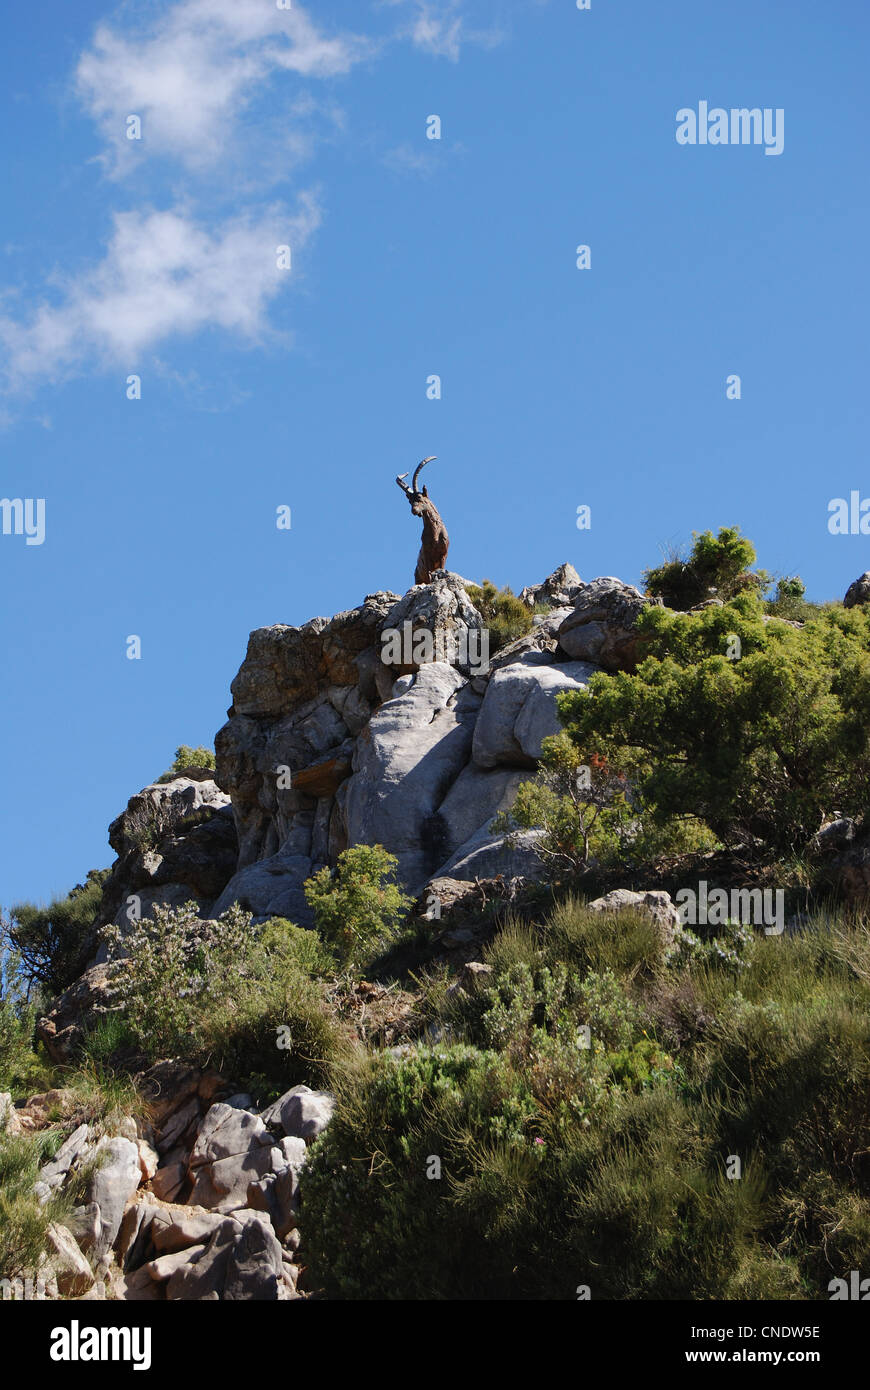 Statua di capra sulla cima di una montagna, Refugio de Juanar, vicino a Marbella, Costa del Sol, provincia di Malaga, Andalusia, l'Europa. Foto Stock